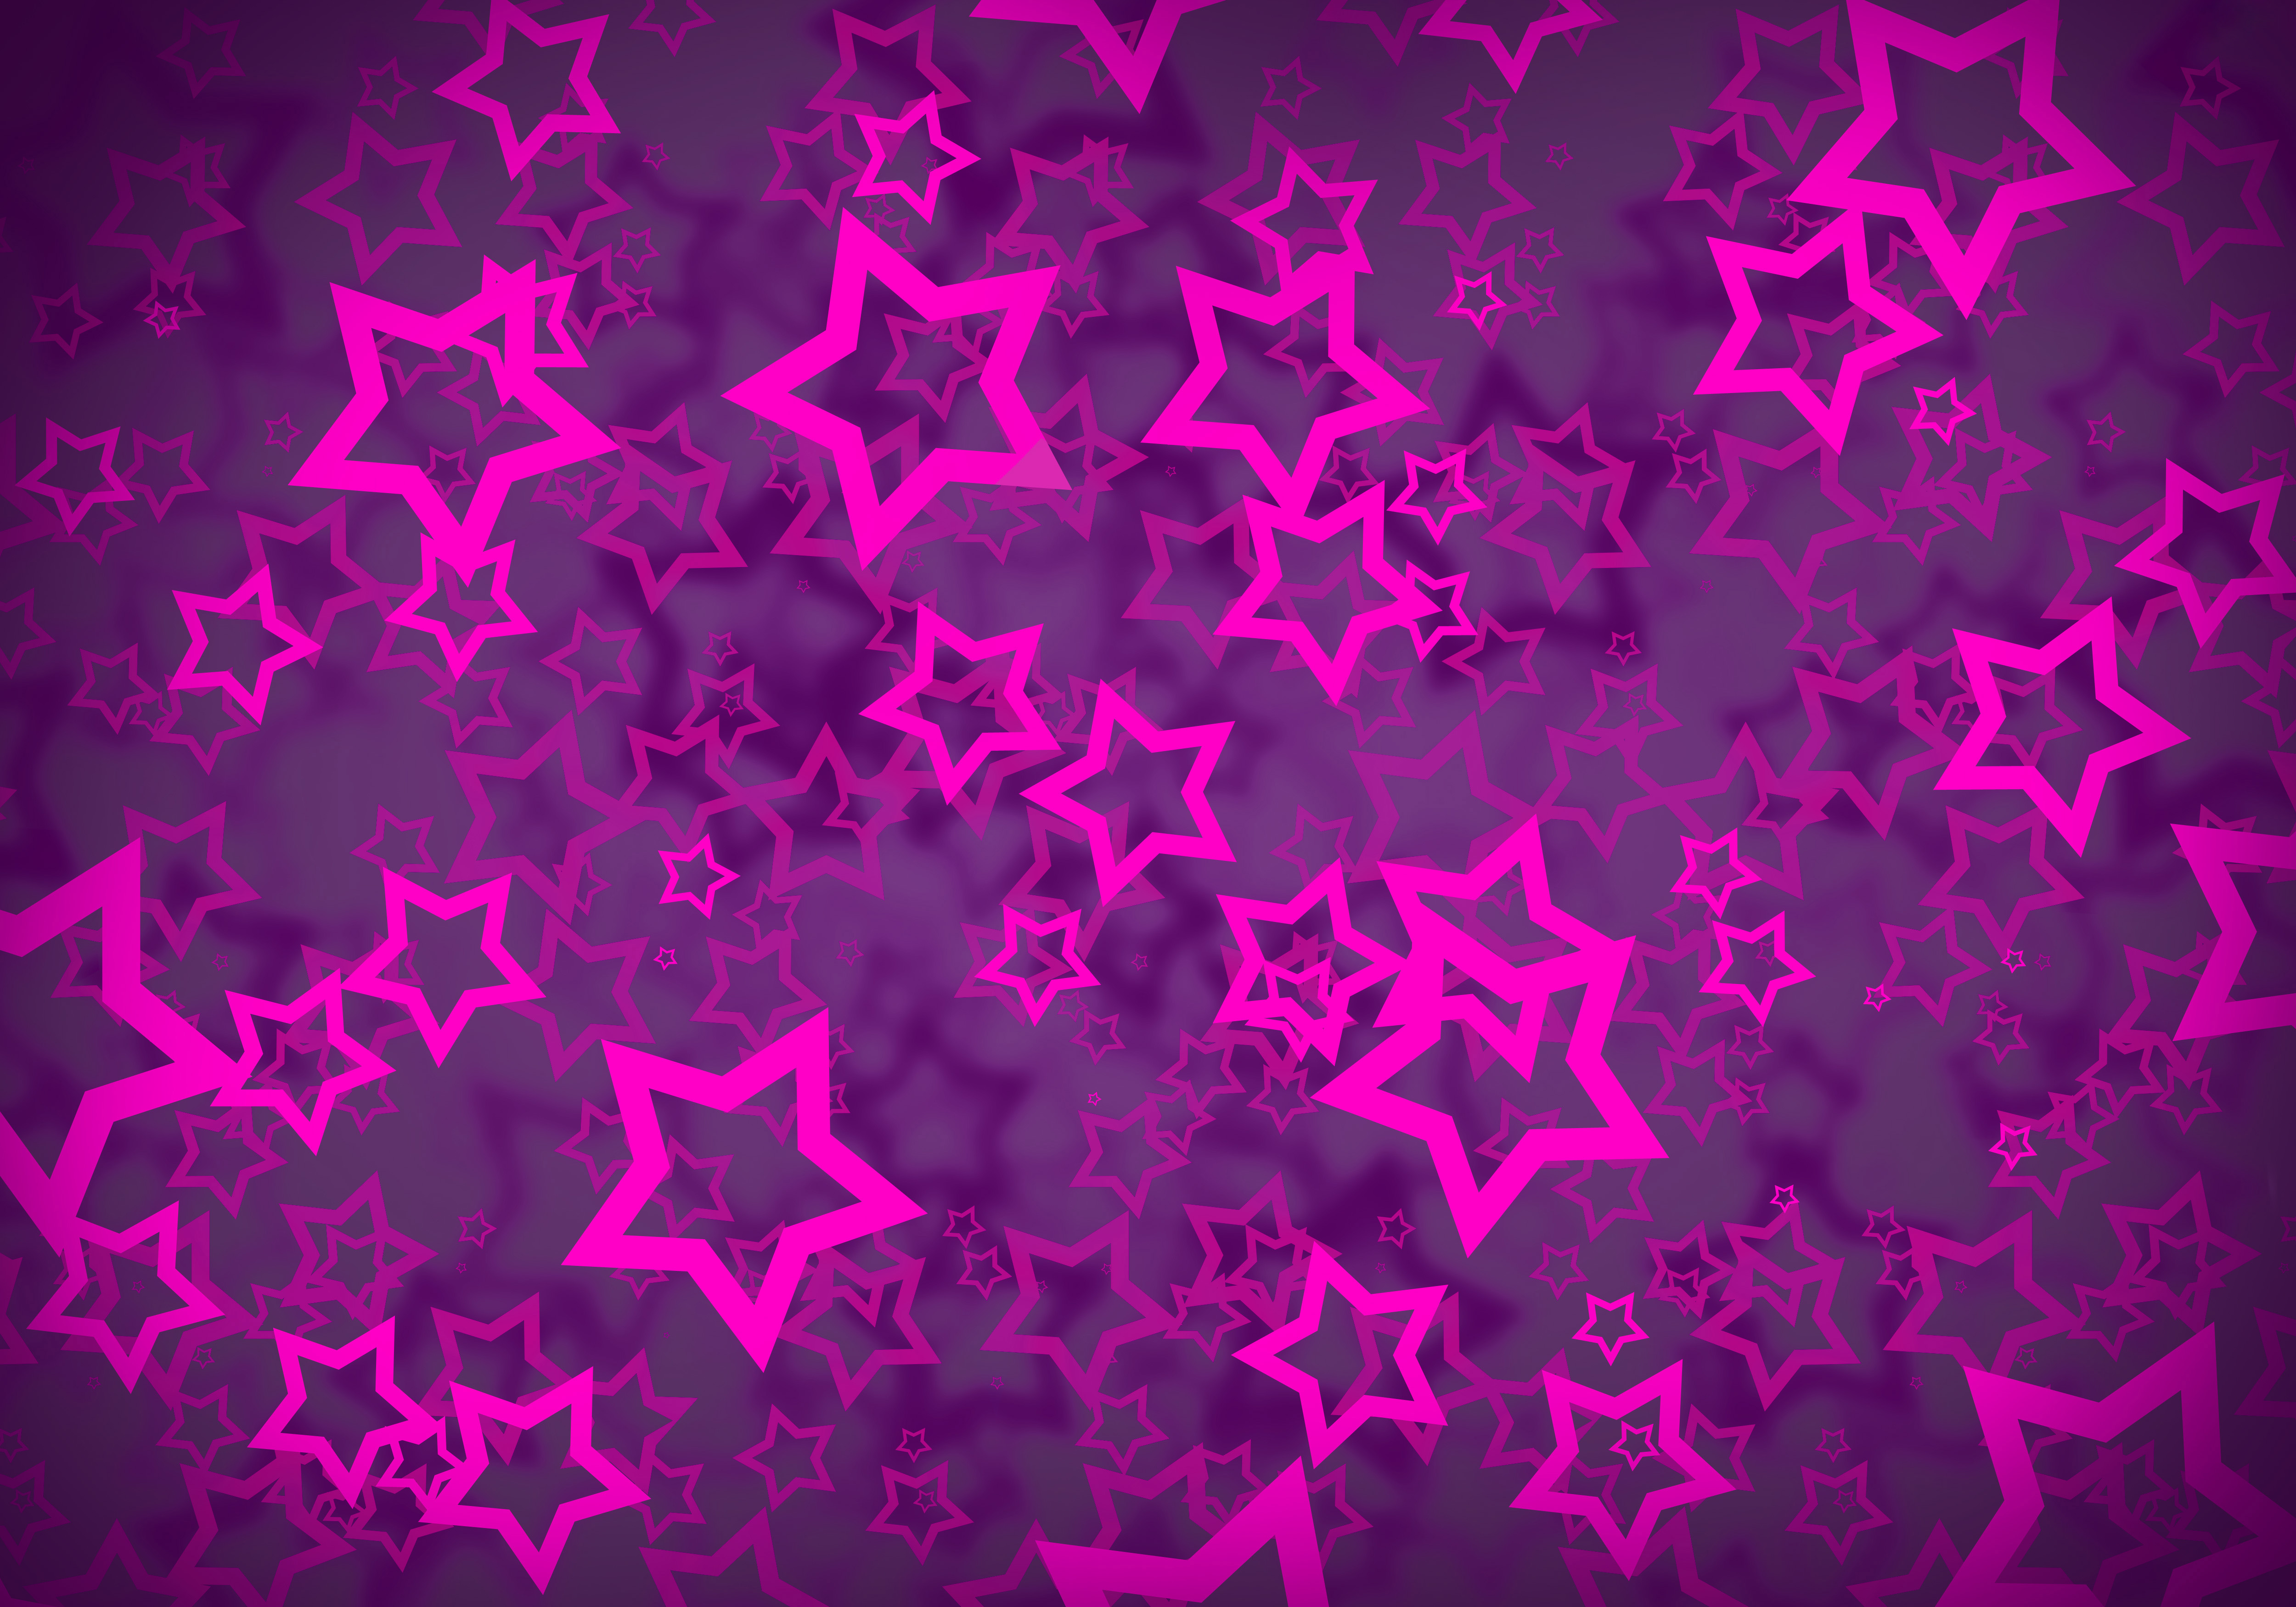 фон - розовые звезды на фиолетовом фоне, скачать фото, текстура